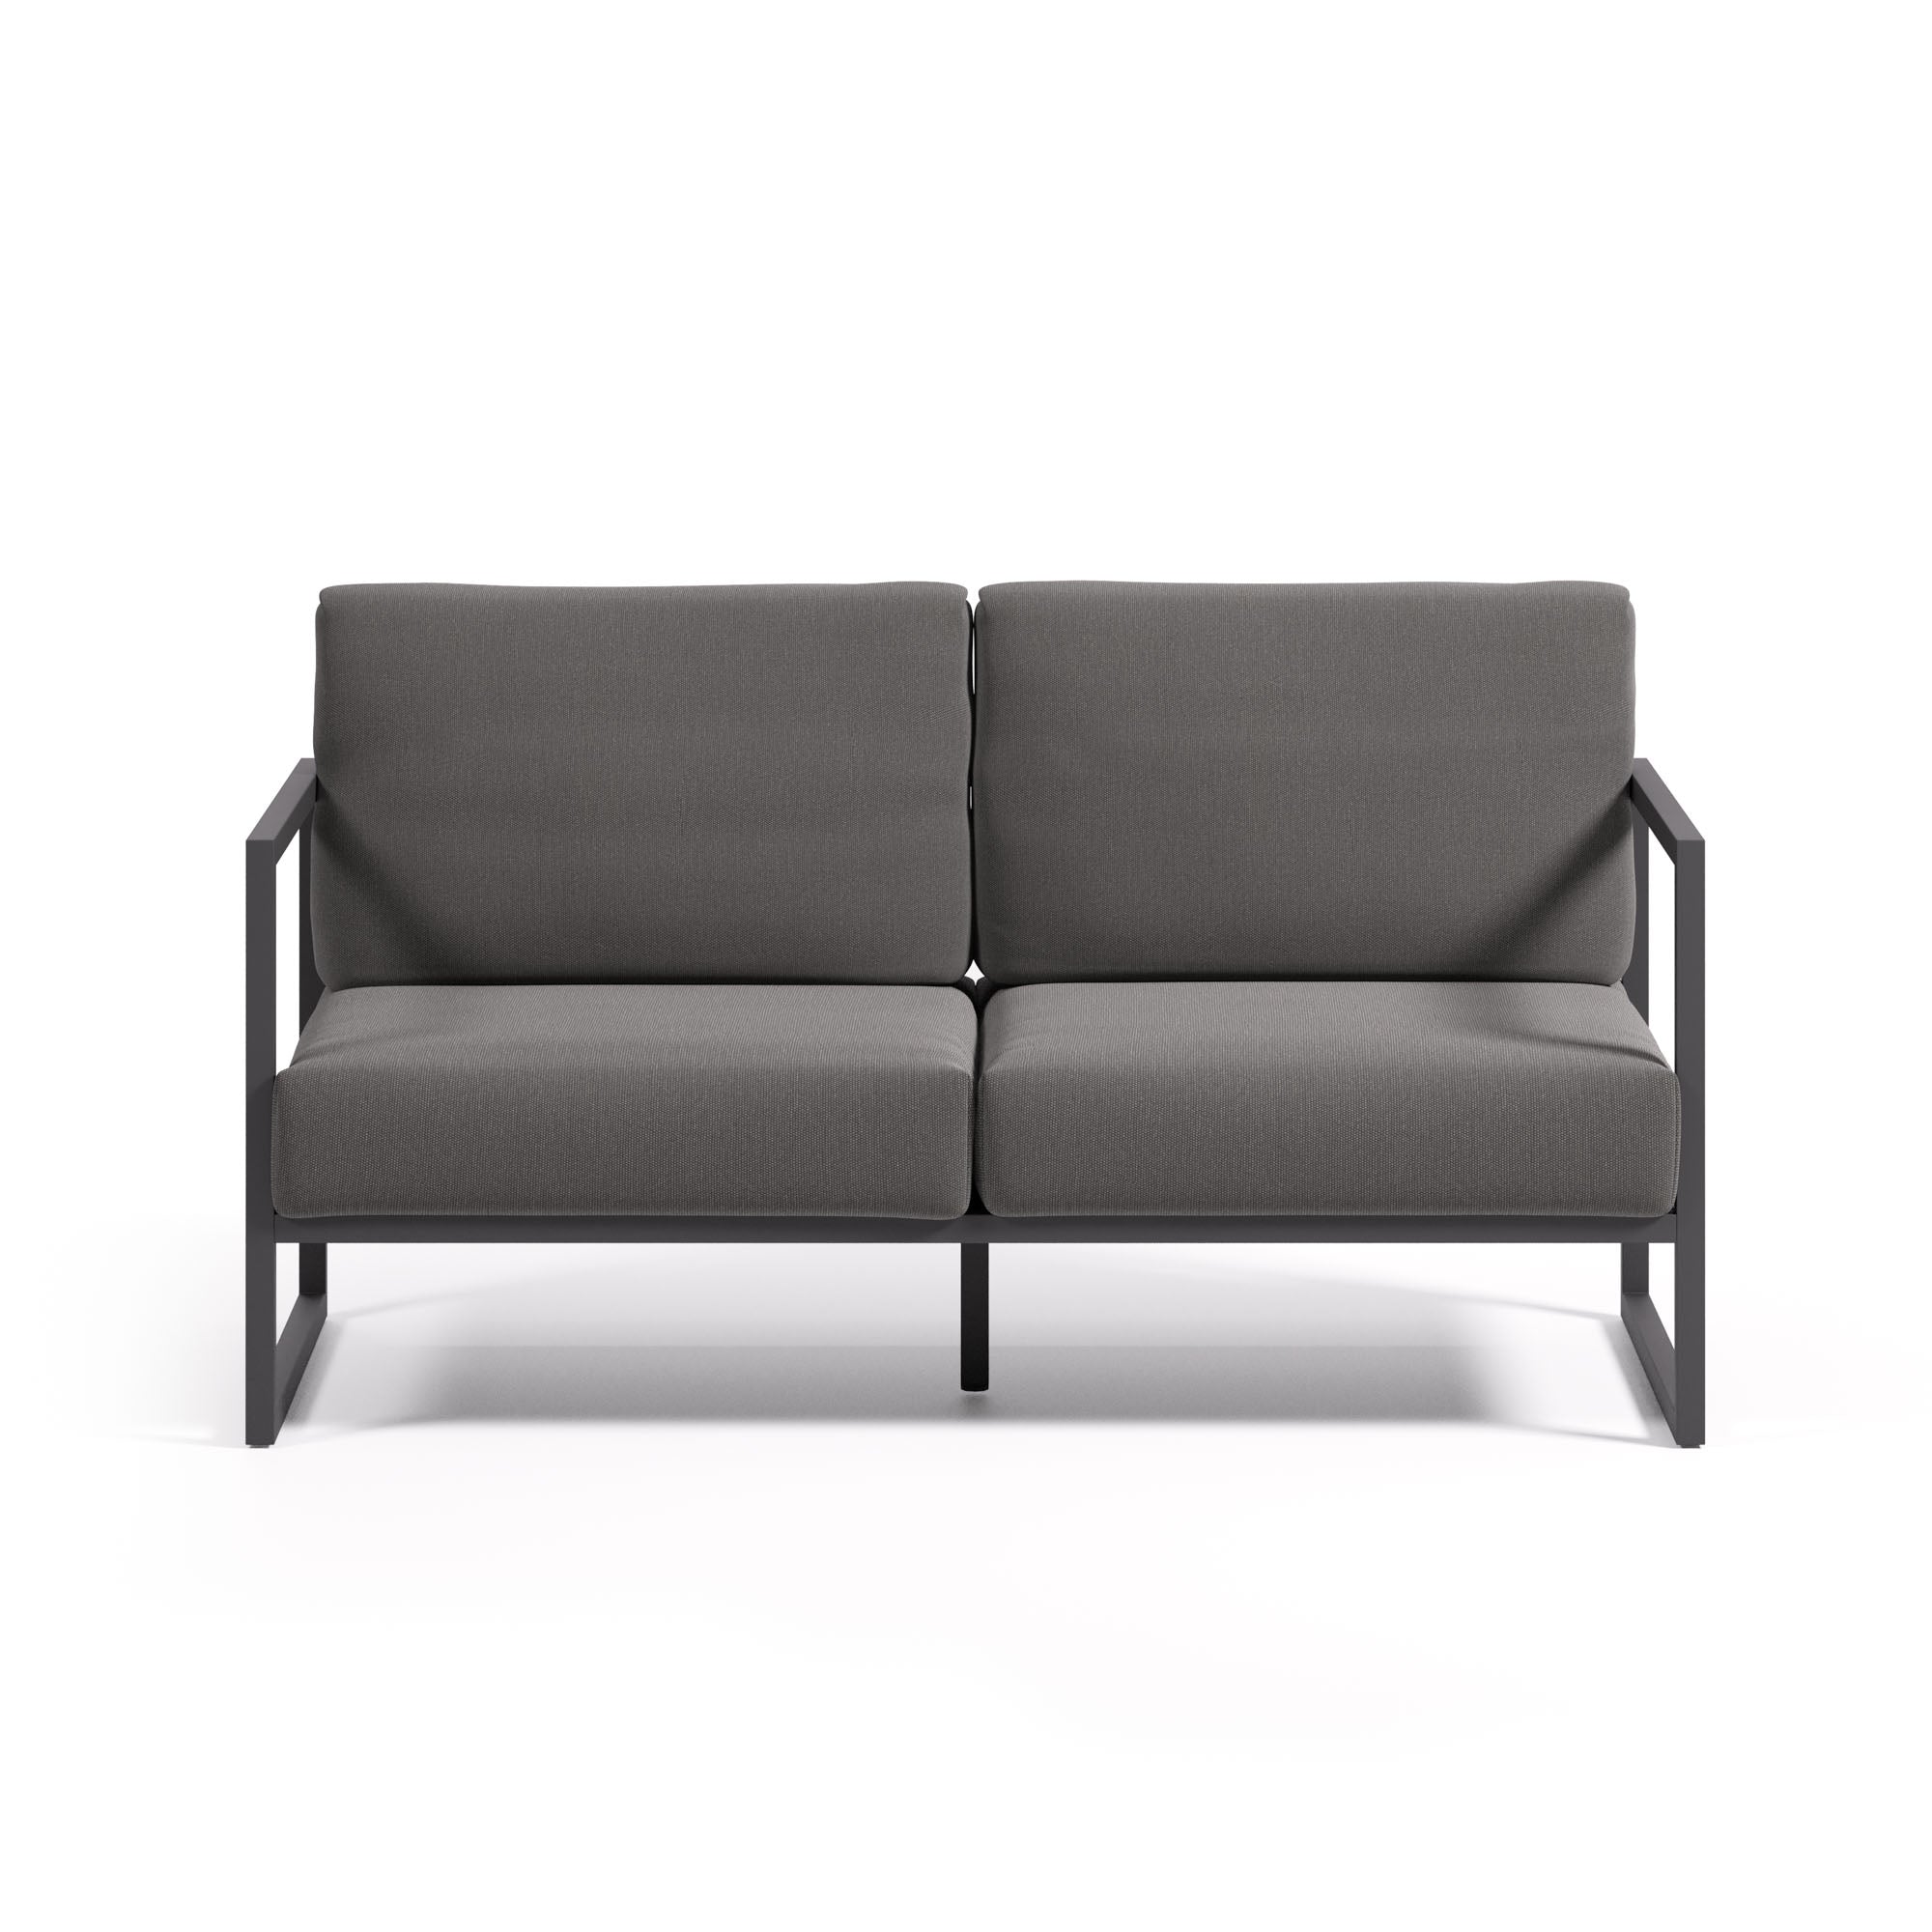 Comova 100% kültéri 2 személyes kanapé sötétszürke és fekete alumíniumból, 150 cm